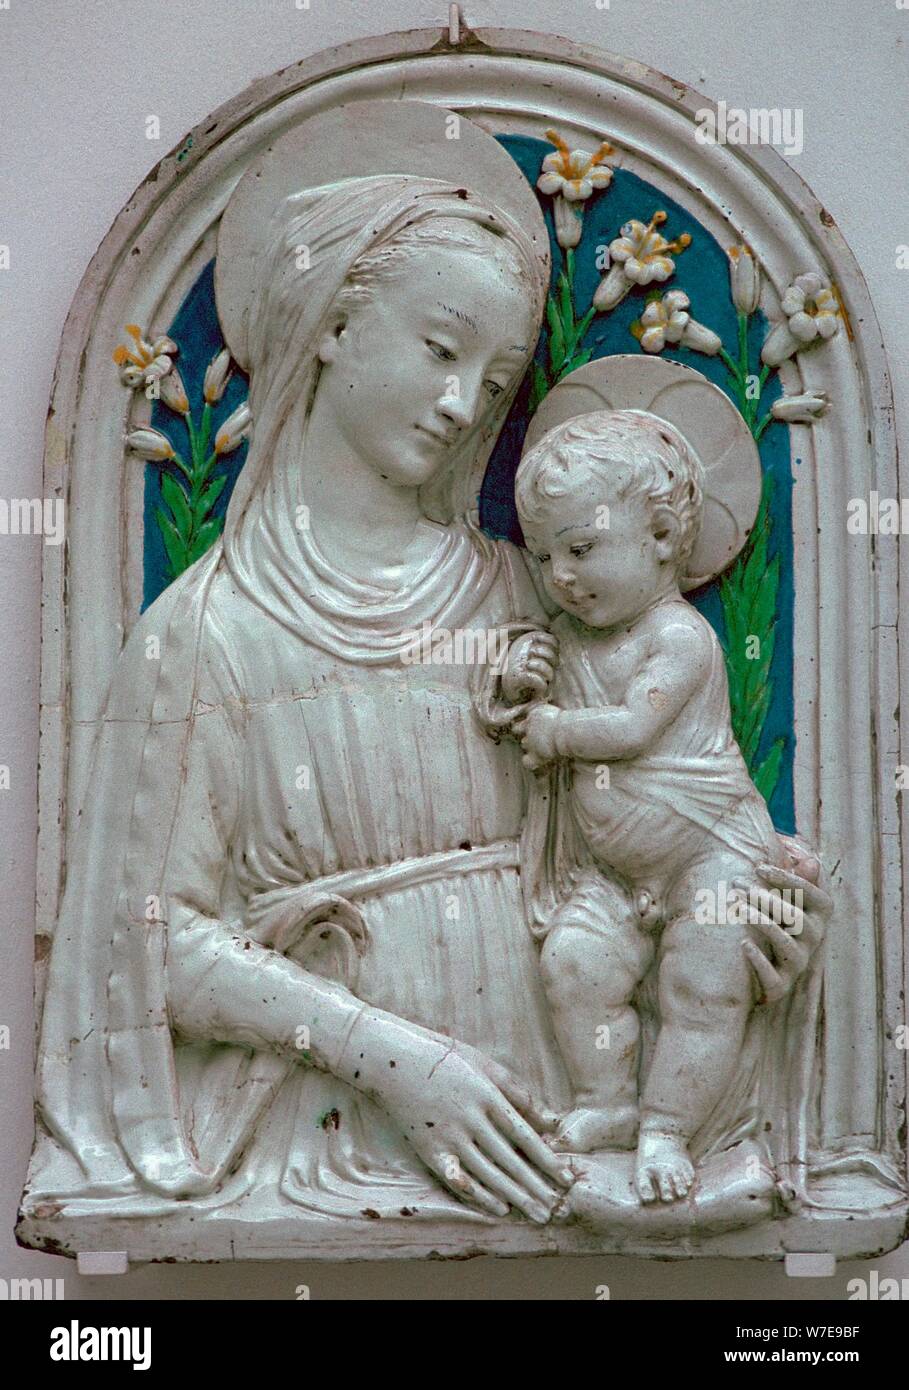 Representación de la Virgen y el niño. Artista: Desconocido Foto de stock